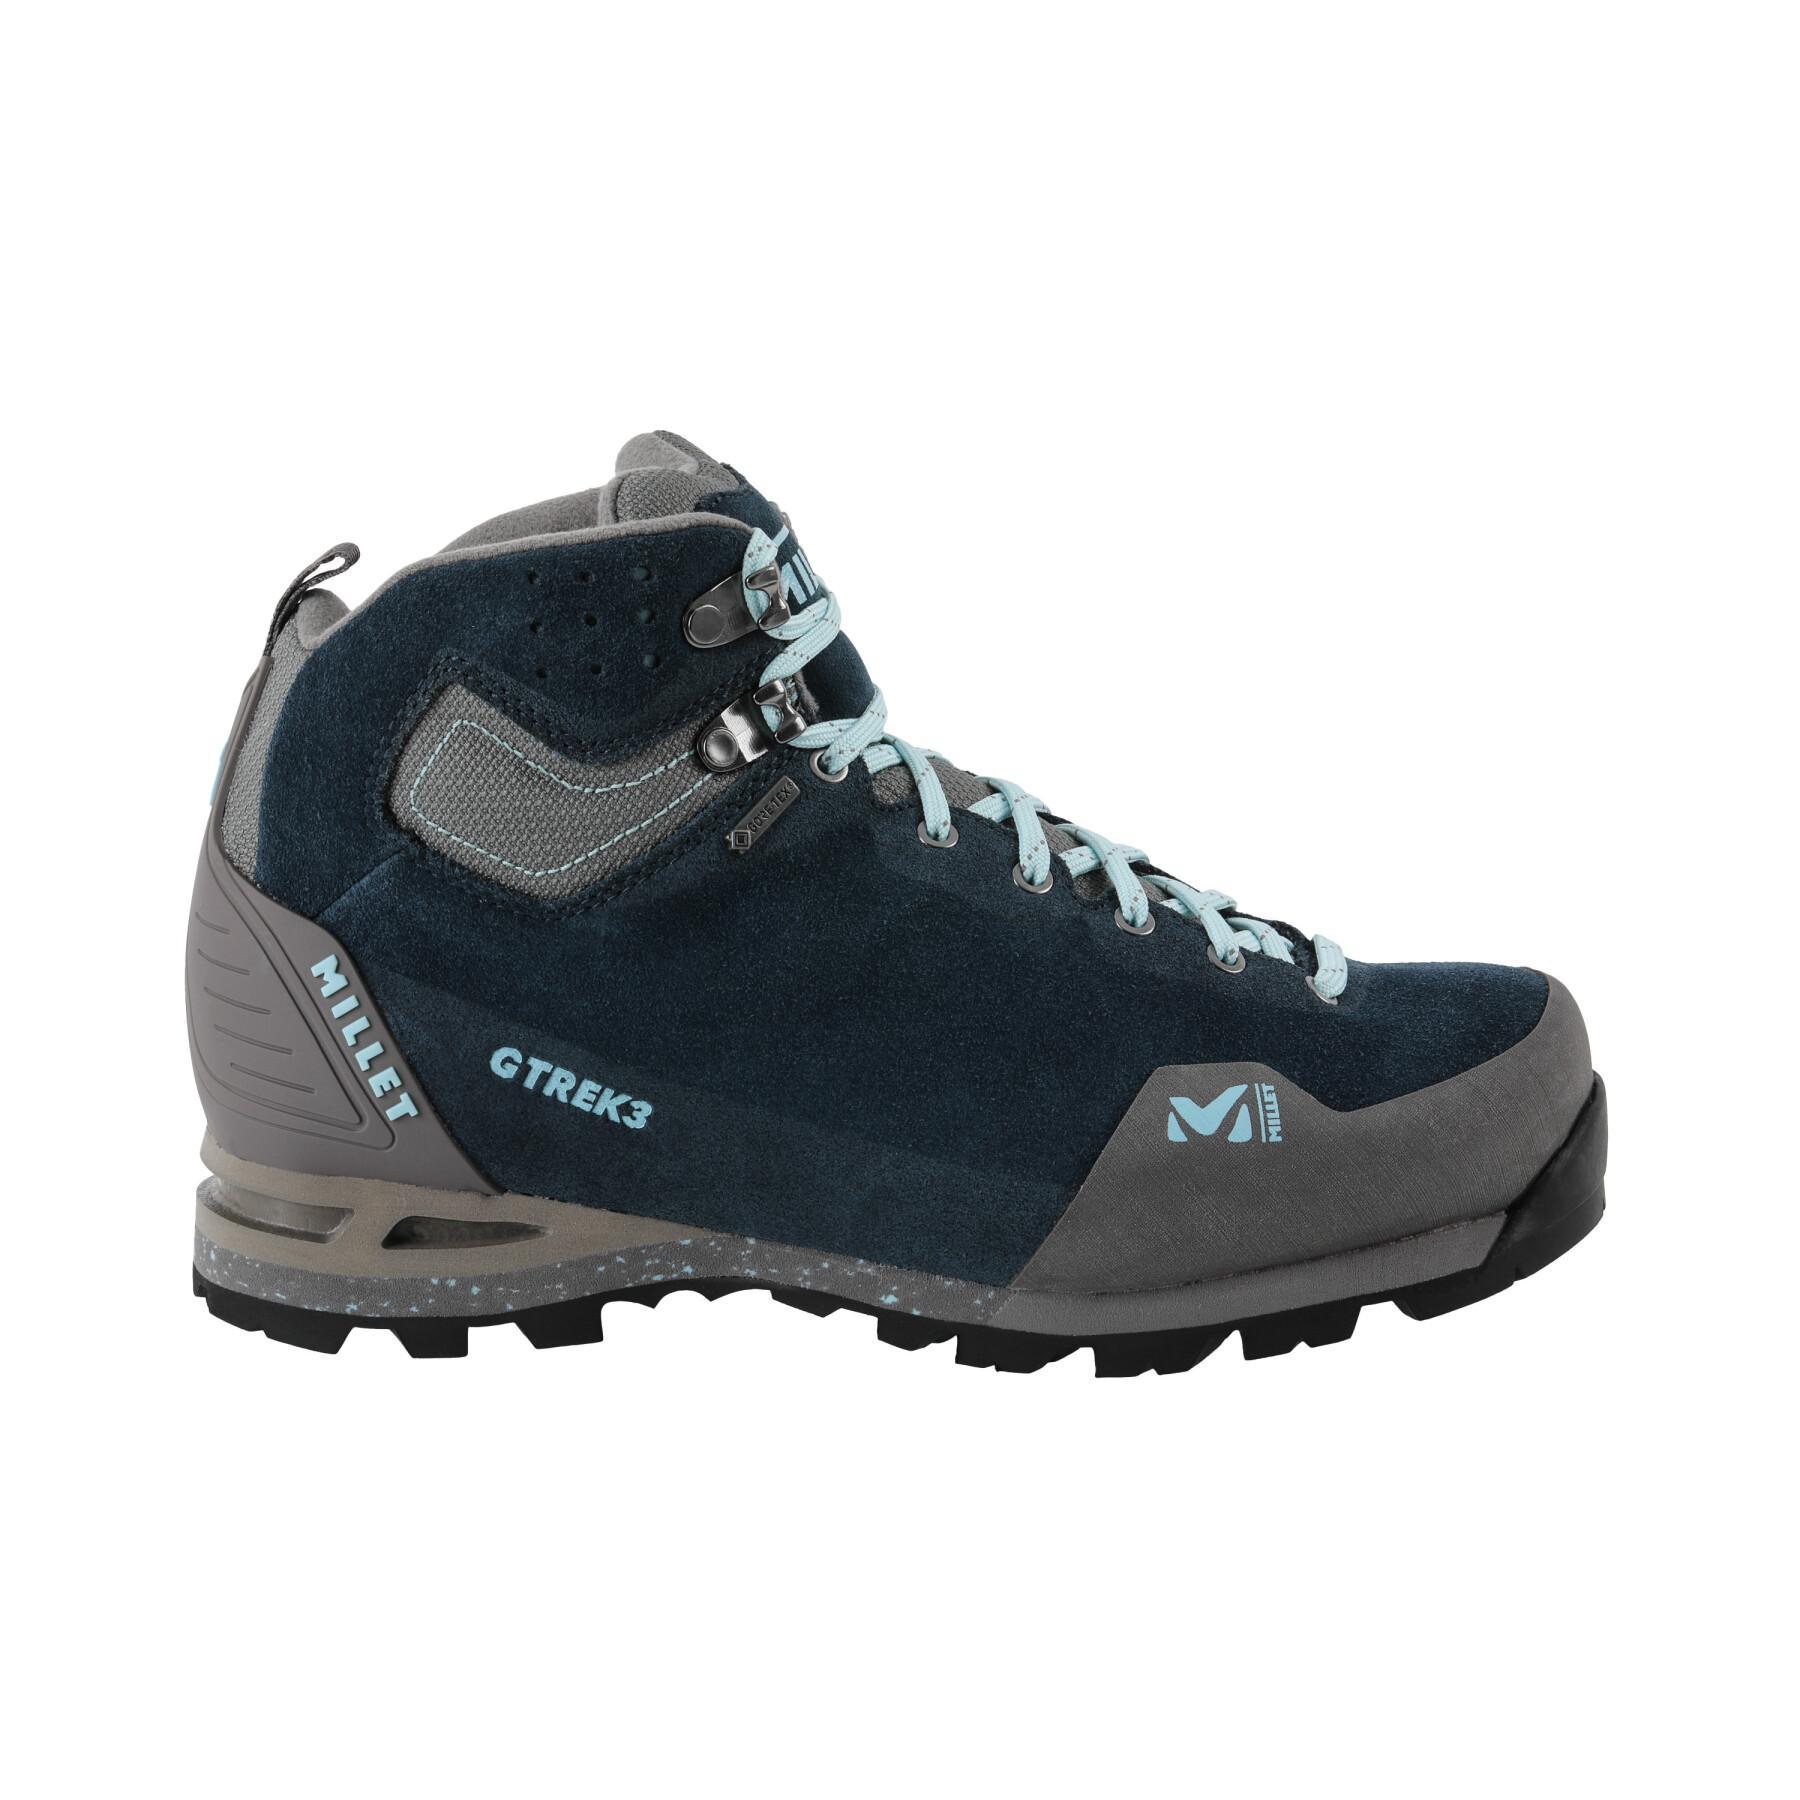 Chaussures de randonnée femme Millet G Trek 3 Goretex